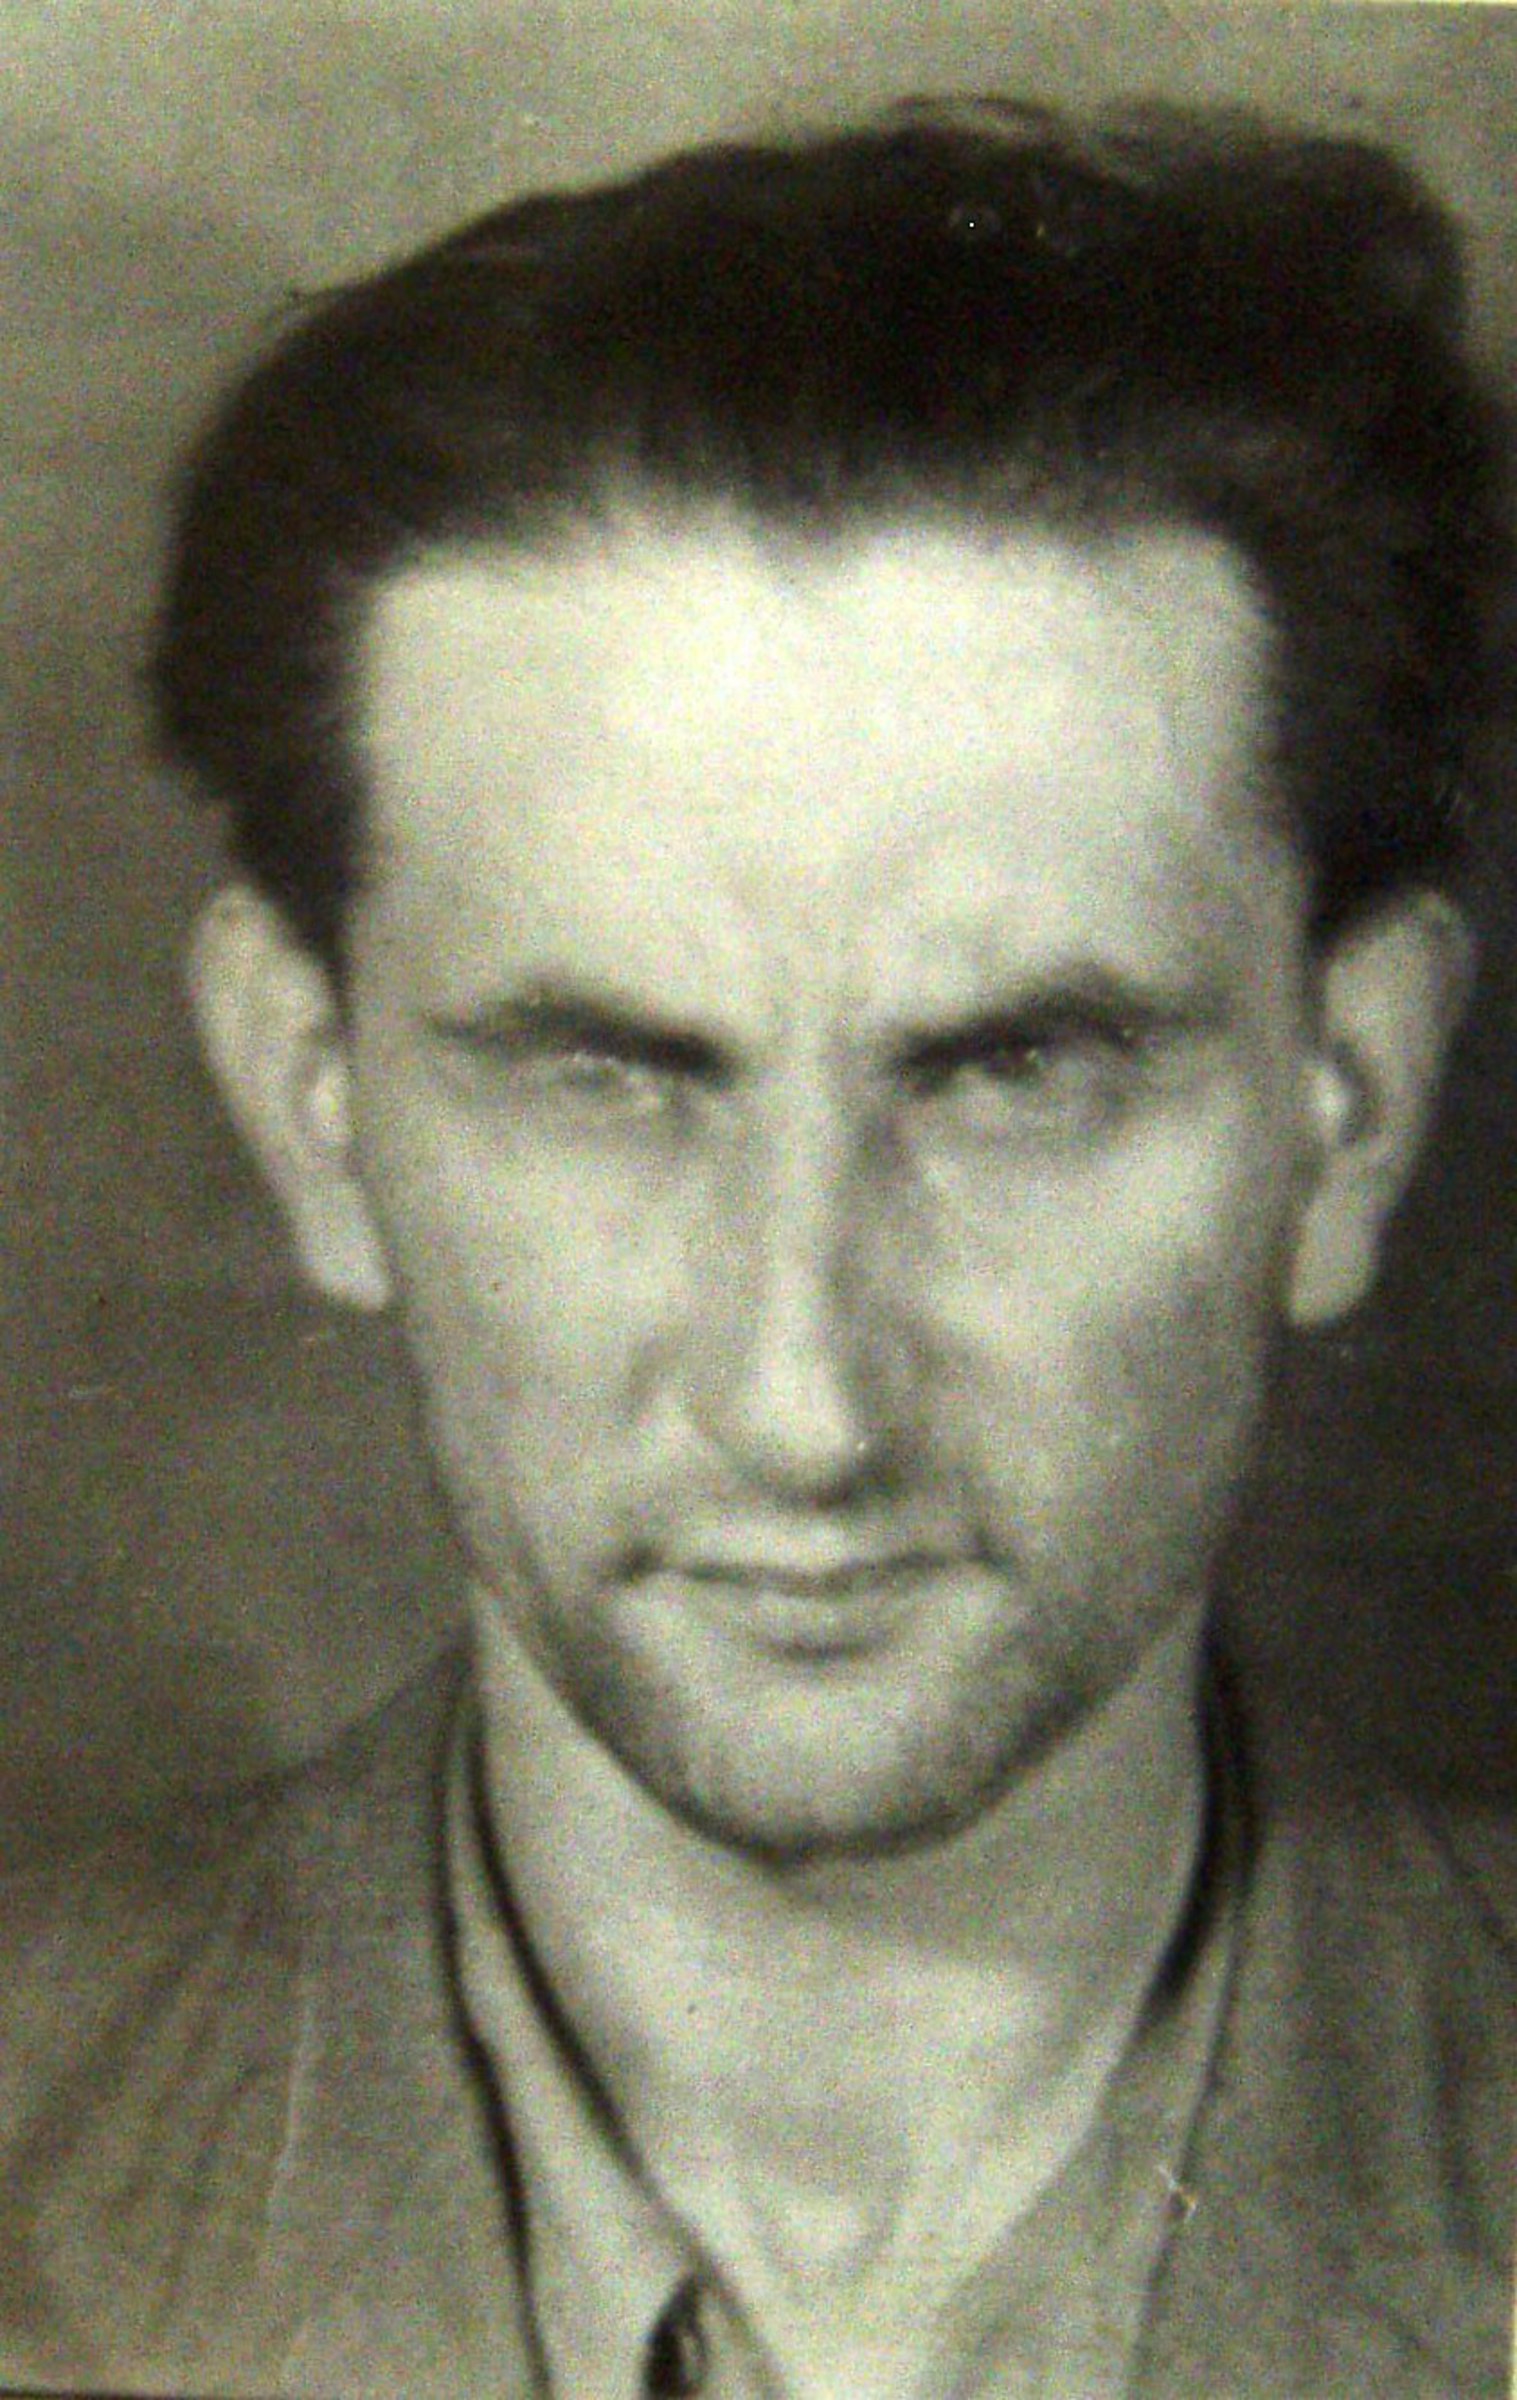 Alexander Feuerstein v roce 1951 při zatčení